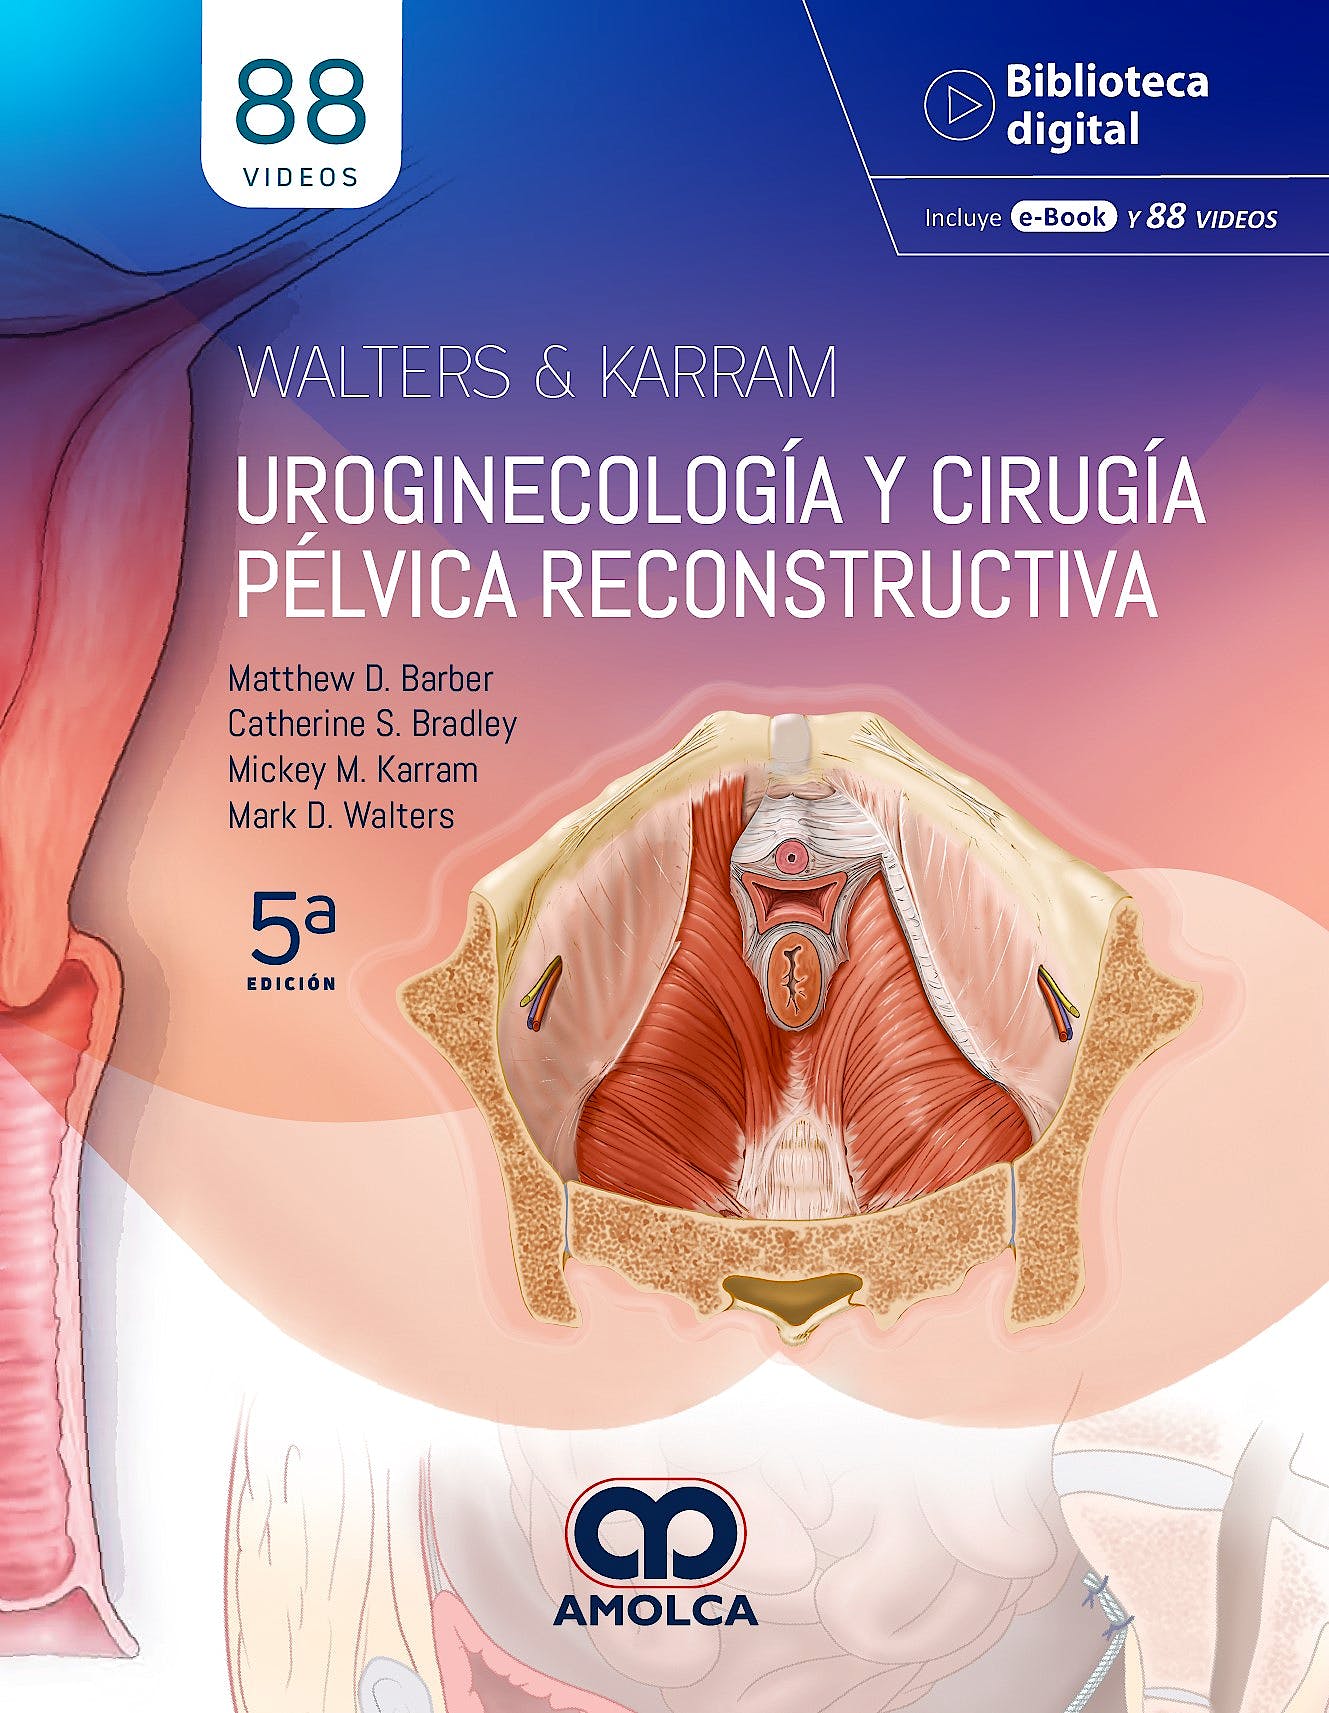 WALTER & KARRAM Uroginecología y Cirugía Pélvica Reconstructiva